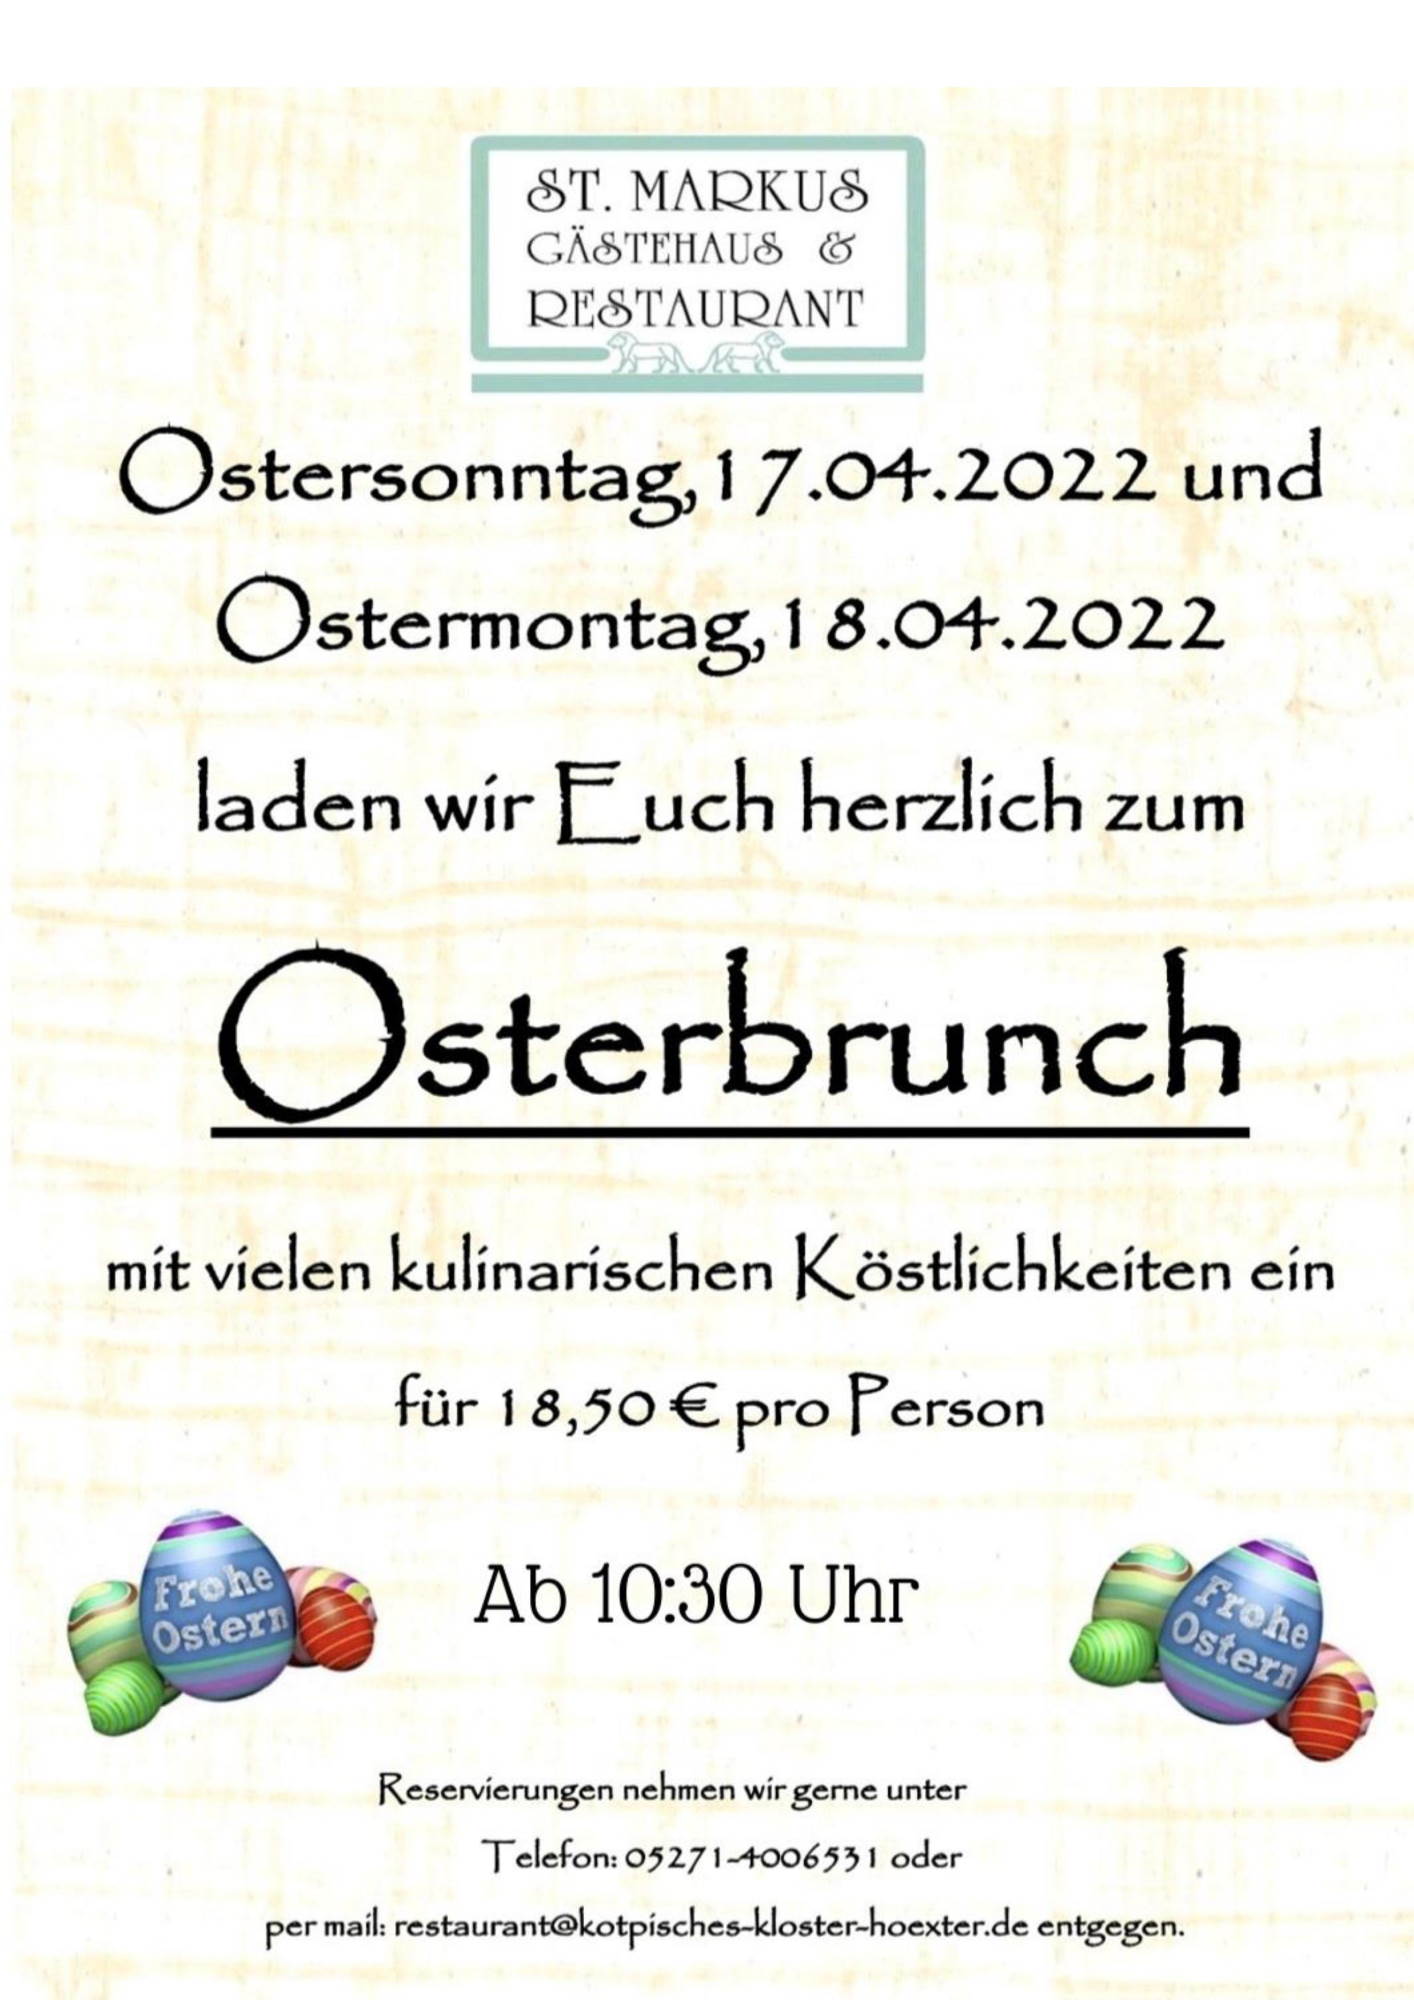 St. Markus Restaurant Höxter Brenkhausen Osterbrunch 2022